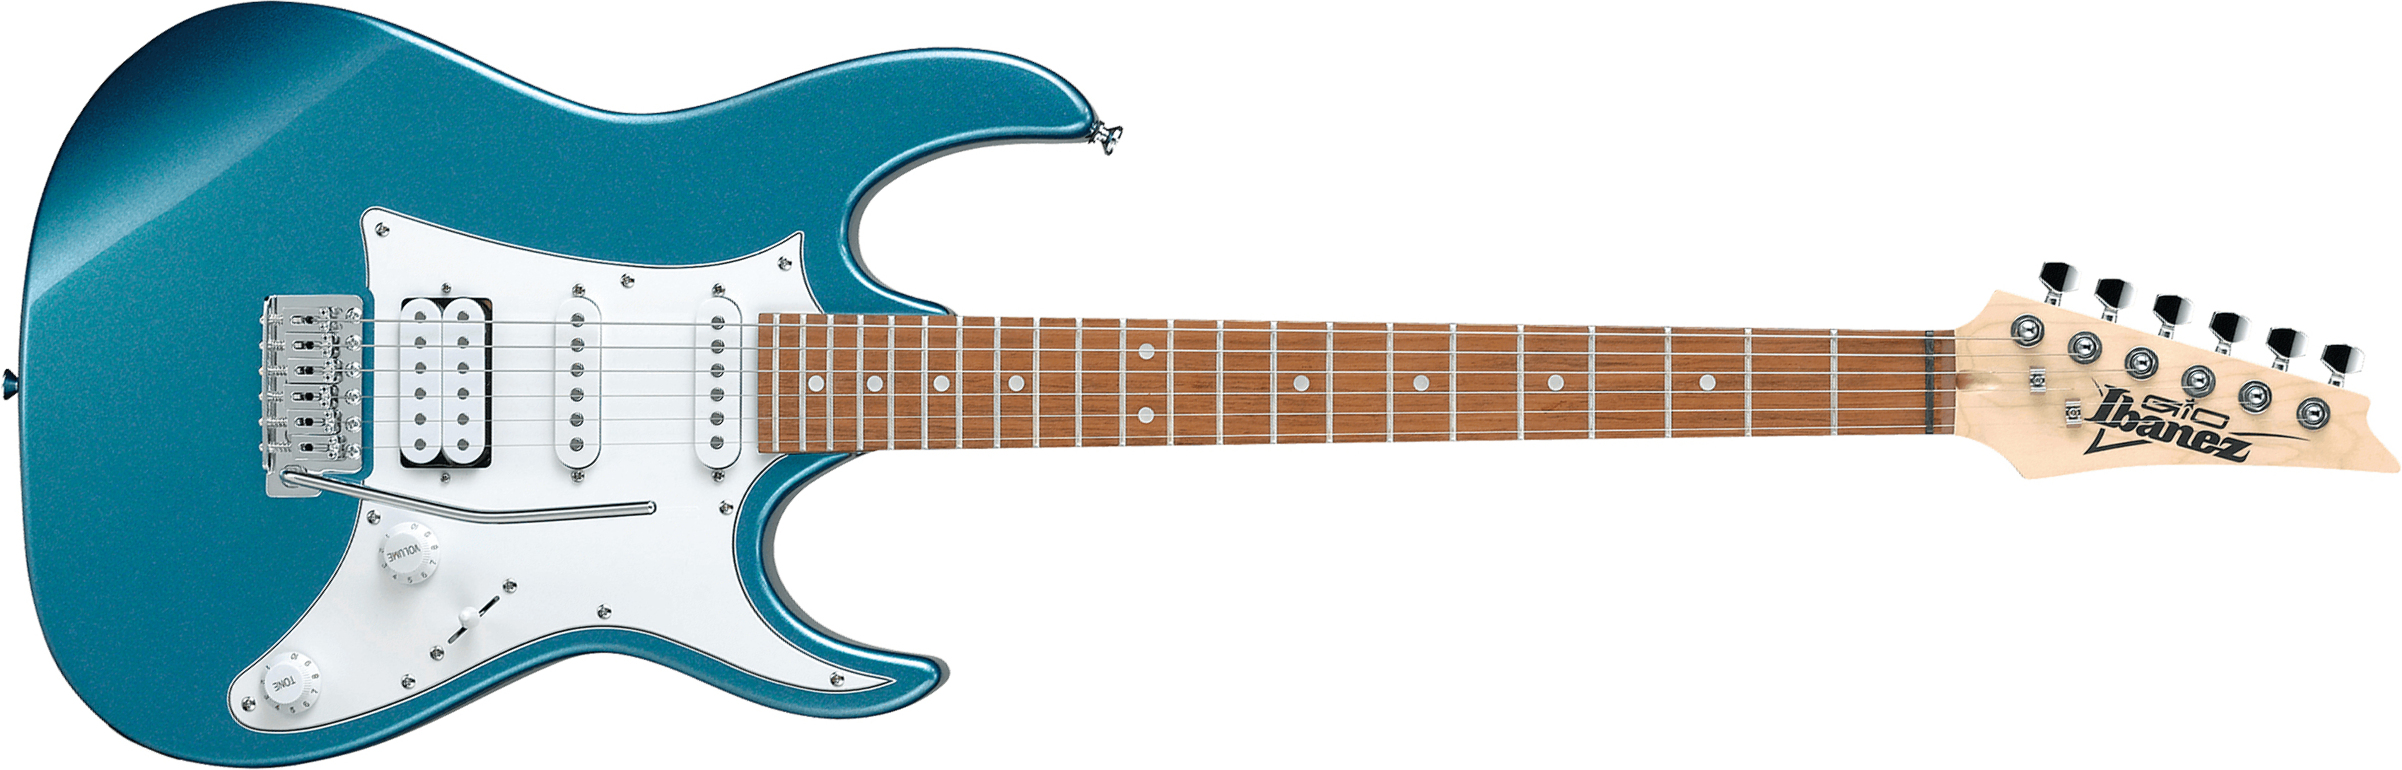 Ibanez Grx40 Mlb Gio Hss Trem Jat - Metallic Light Blue - Elektrische gitaar in Str-vorm - Main picture